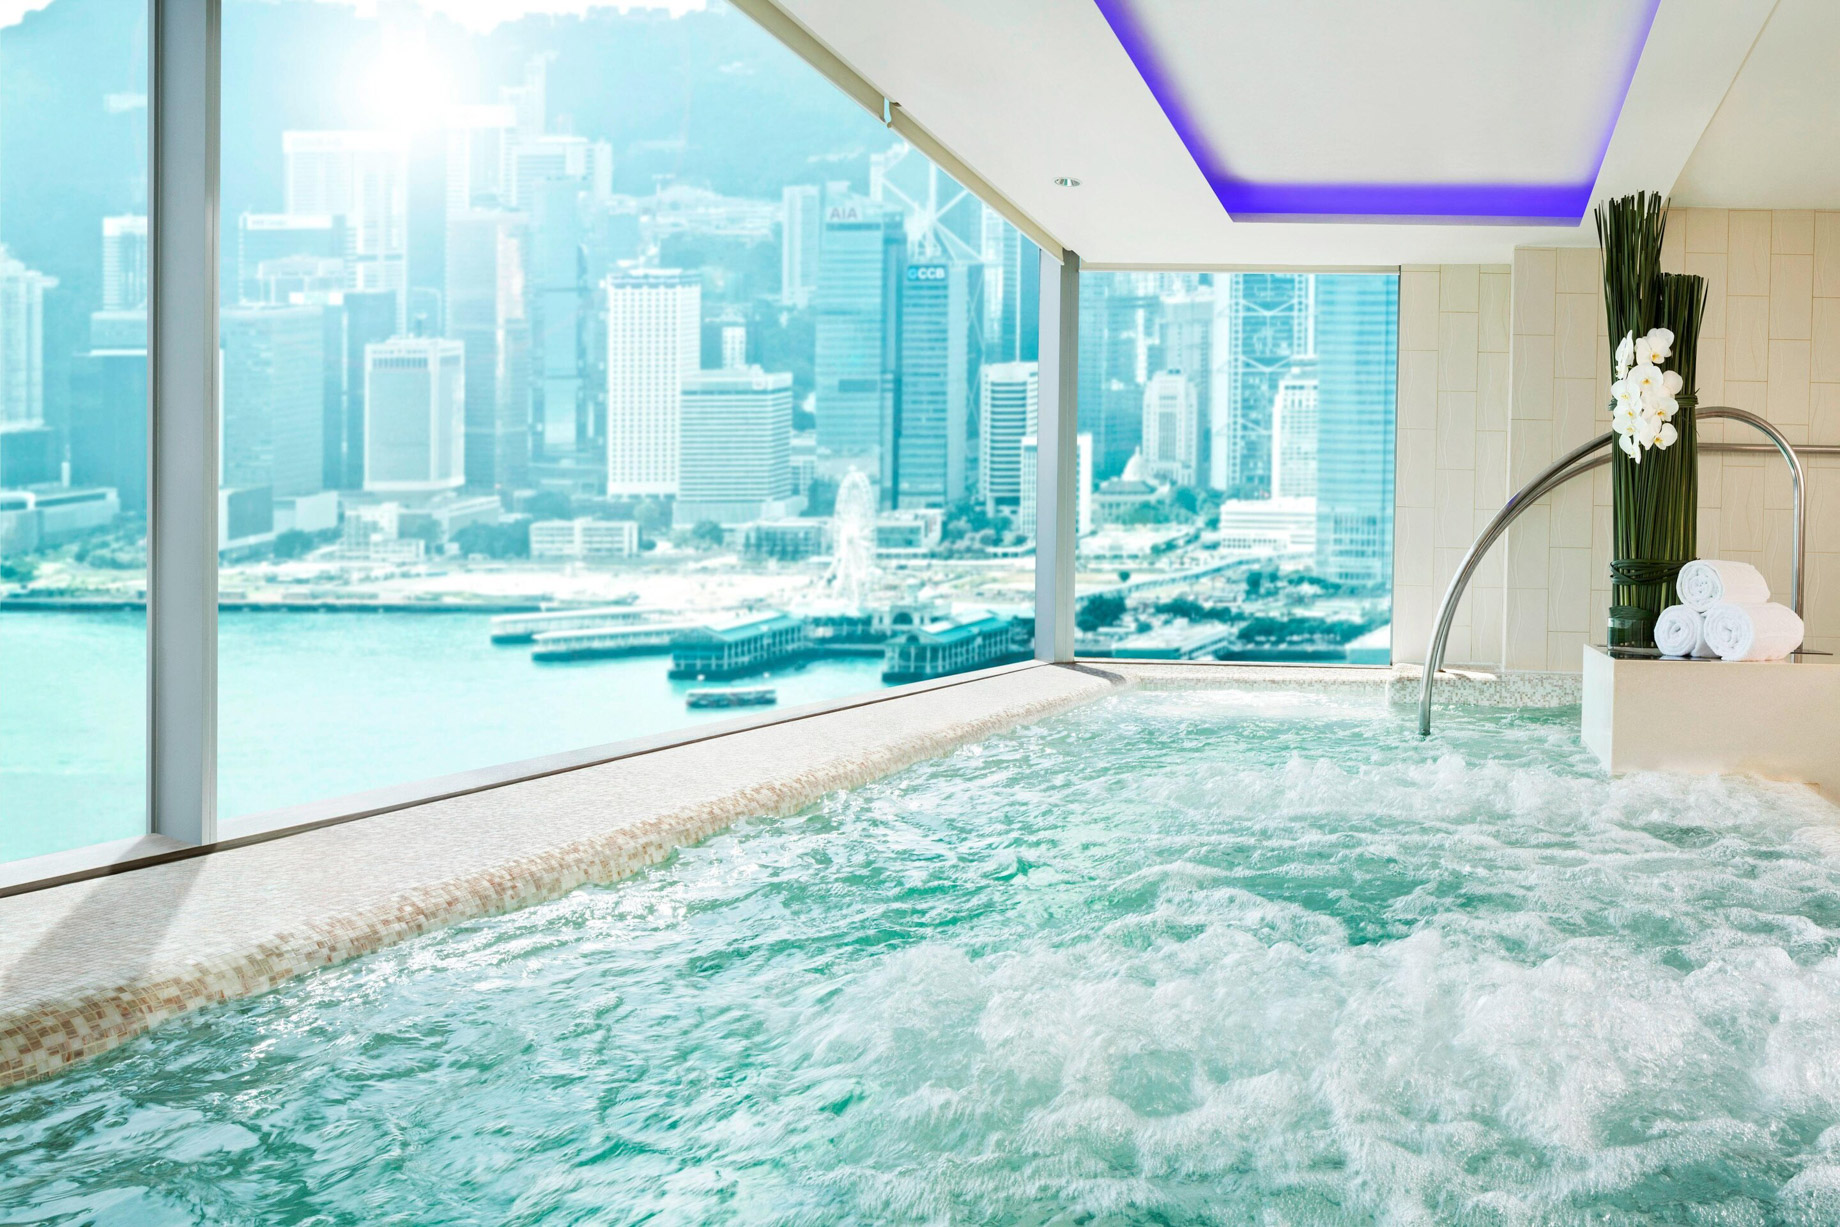 W Hong Kong Hotel – Hong Kong – Bliss Spa Pool View